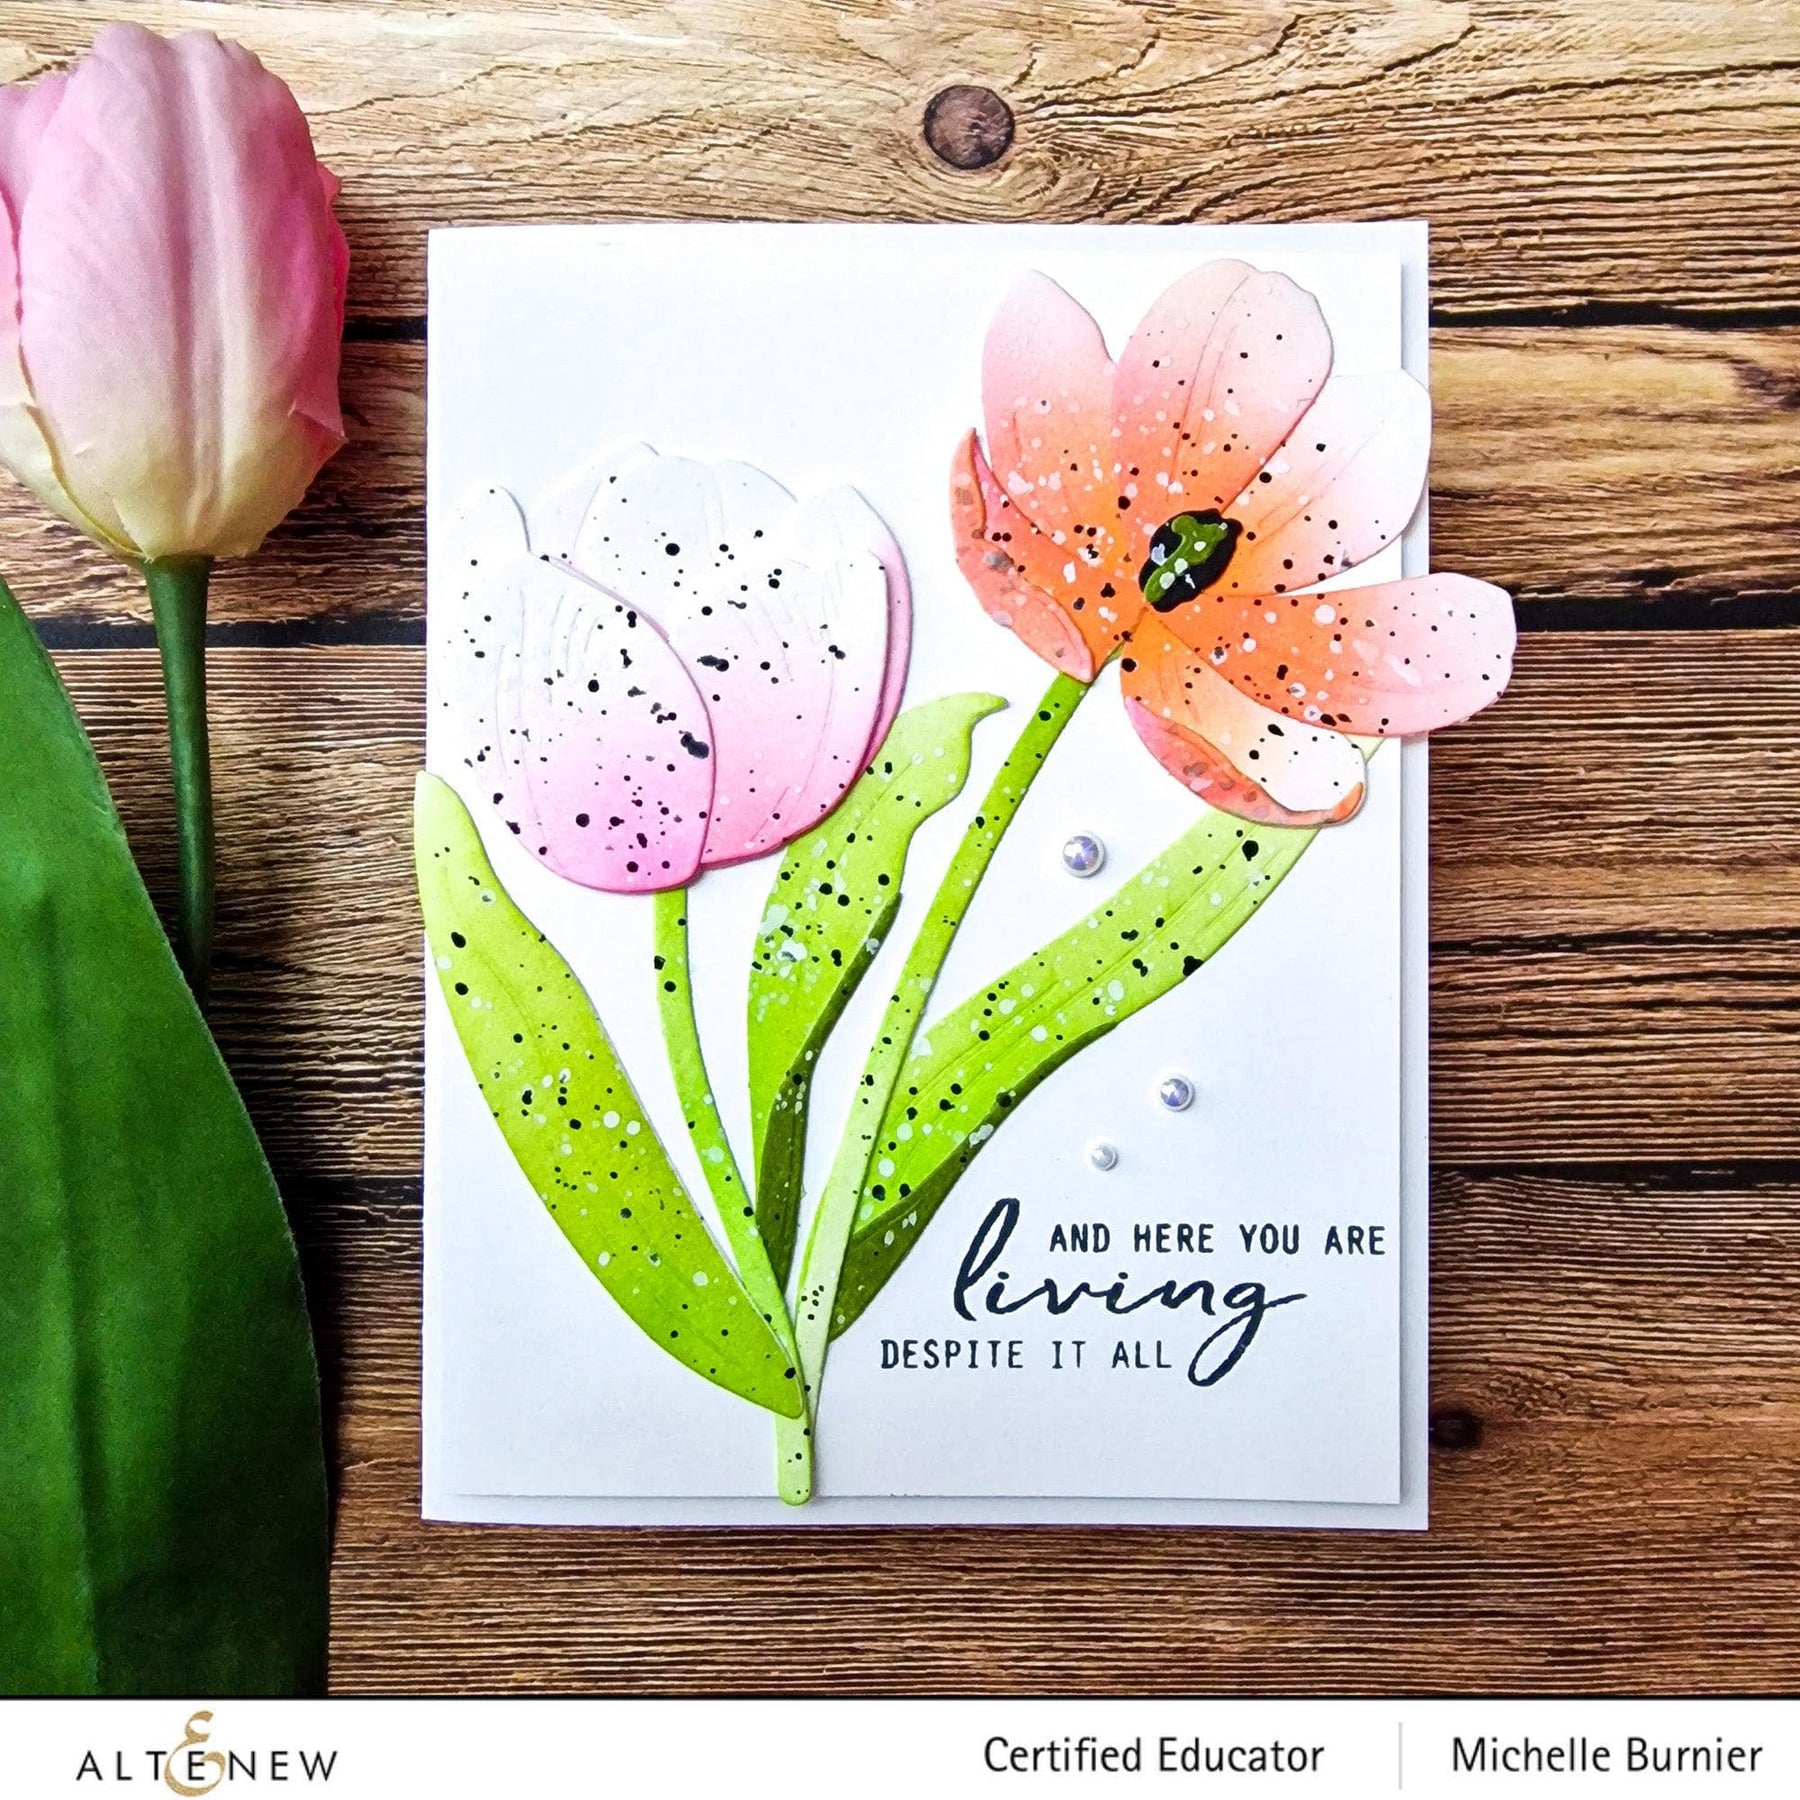 Altenew Craft-A-Flower: Tulip Full Bloom Layering Die Set